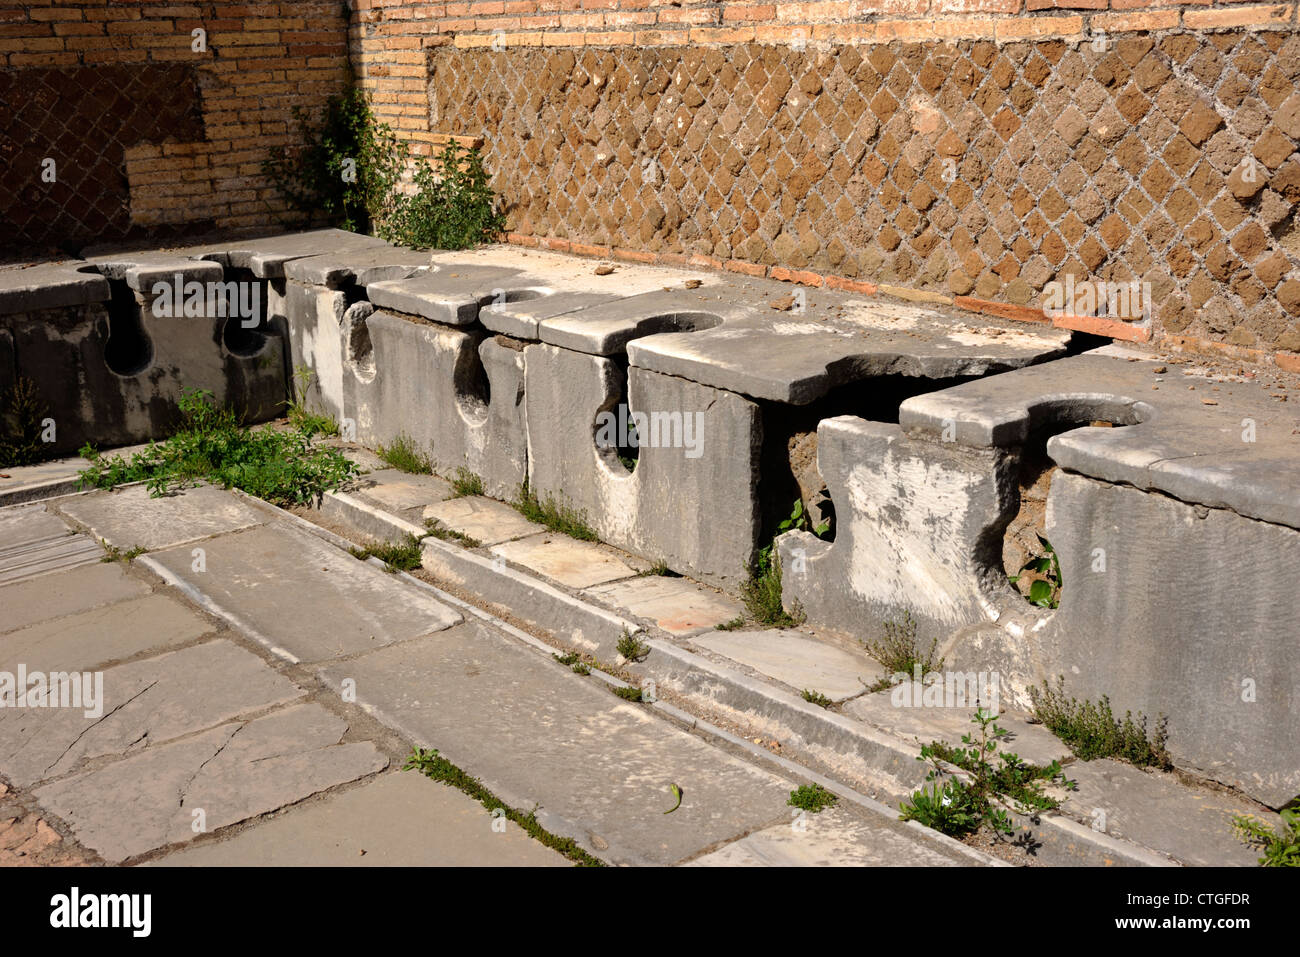 L'Italie, Rome, ostie, latrines publiques dans la domus romaine de triclini Banque D'Images